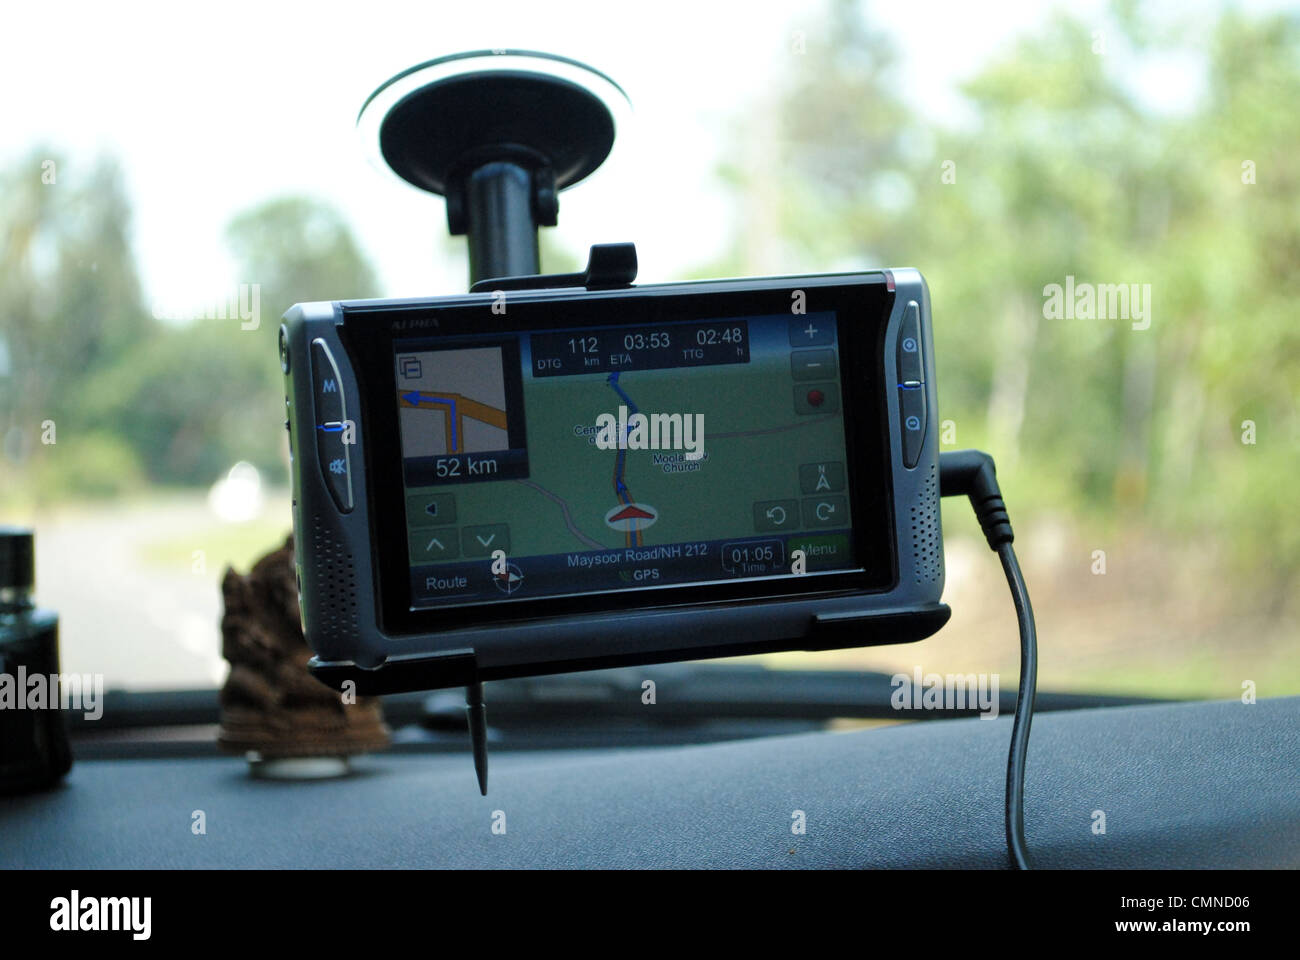 SATNAV device in car Stock Photo